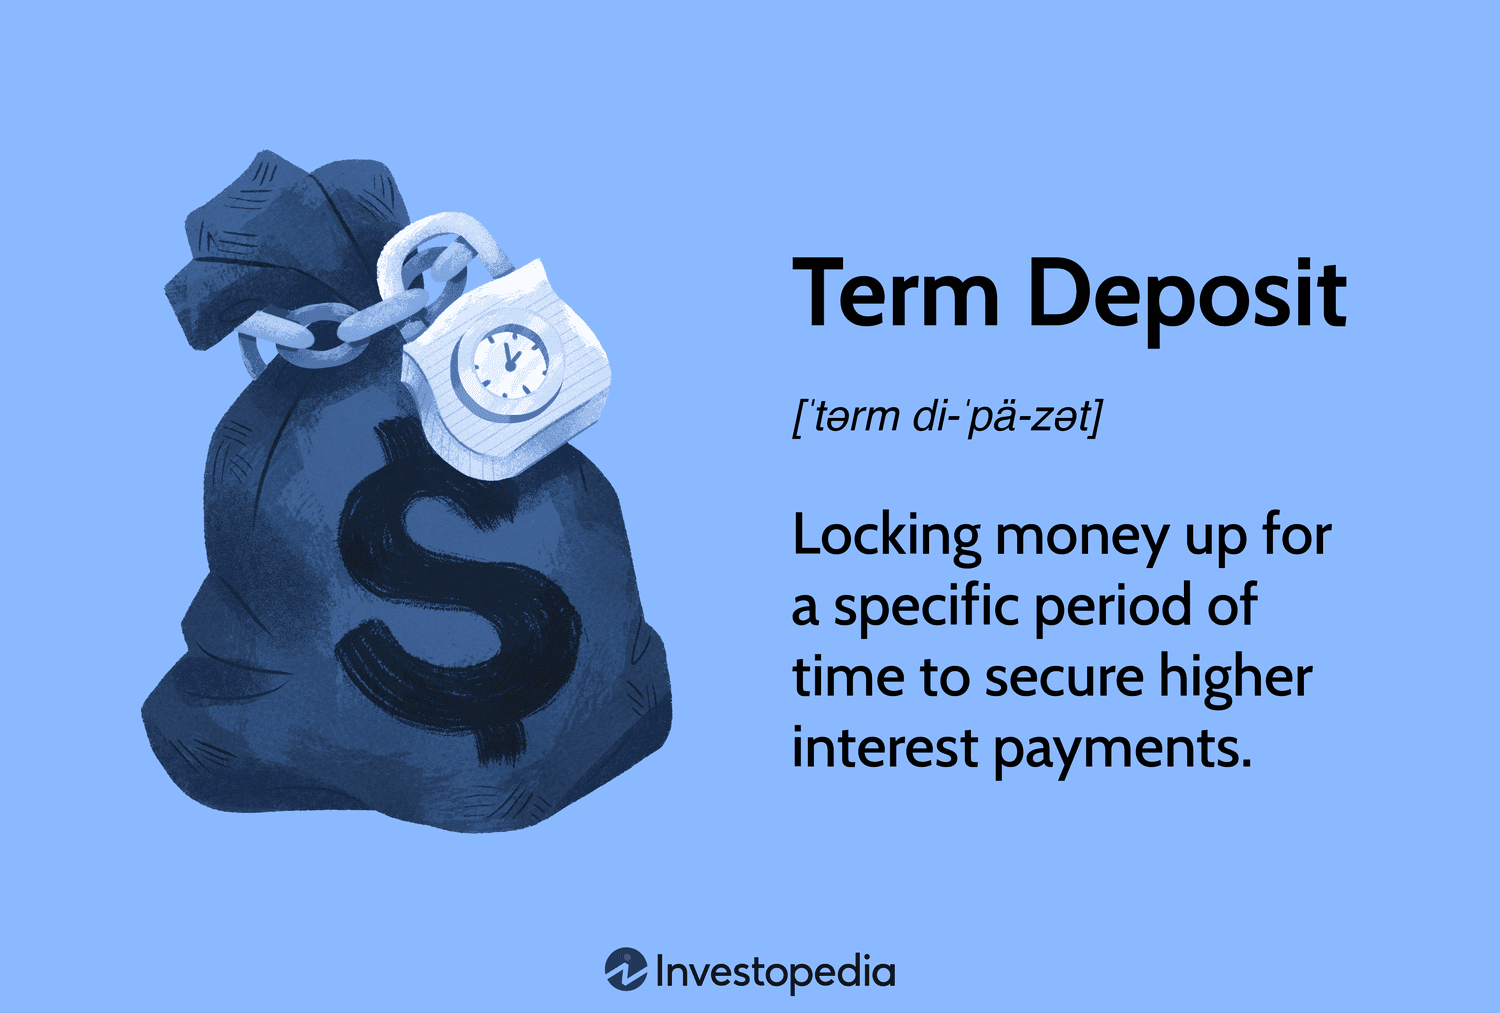 Time deposit - Wikipedia